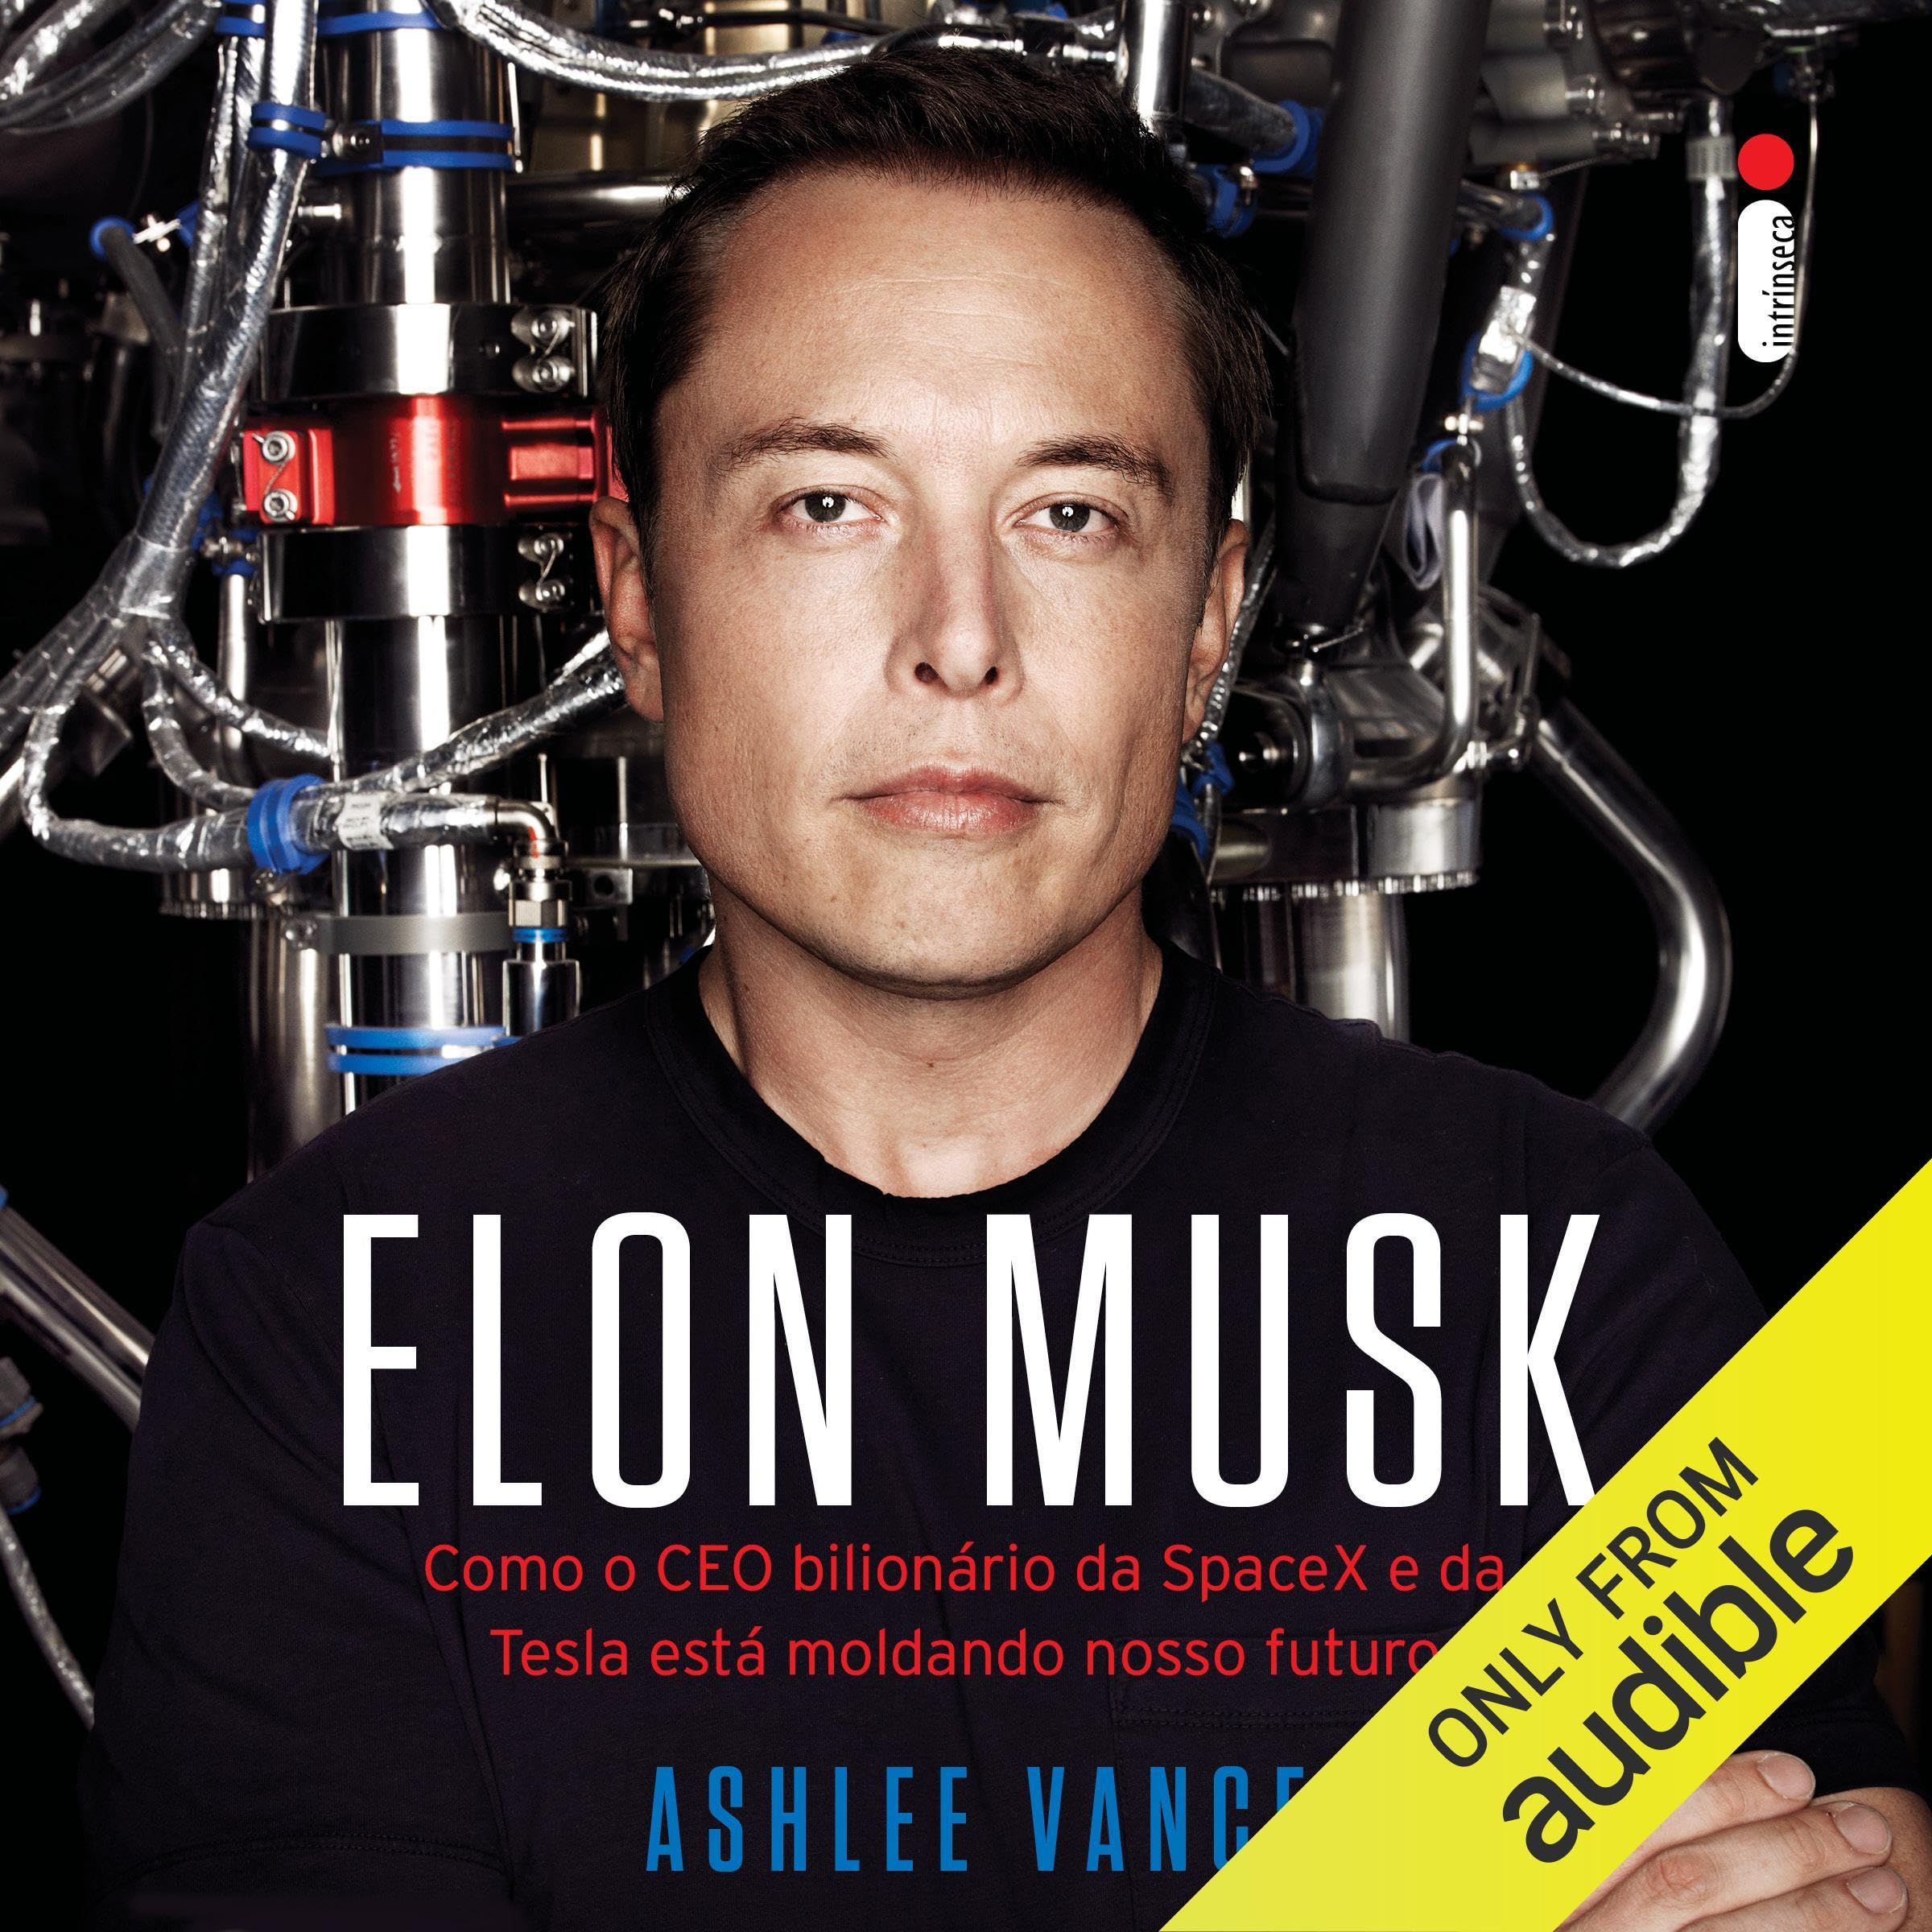 Elon Musk: Como o CEO bilionário da SpaceX e da Tesla está moldando nosso futuro [Tesla, SpaceX, and the Quest for a Fantastic Future]